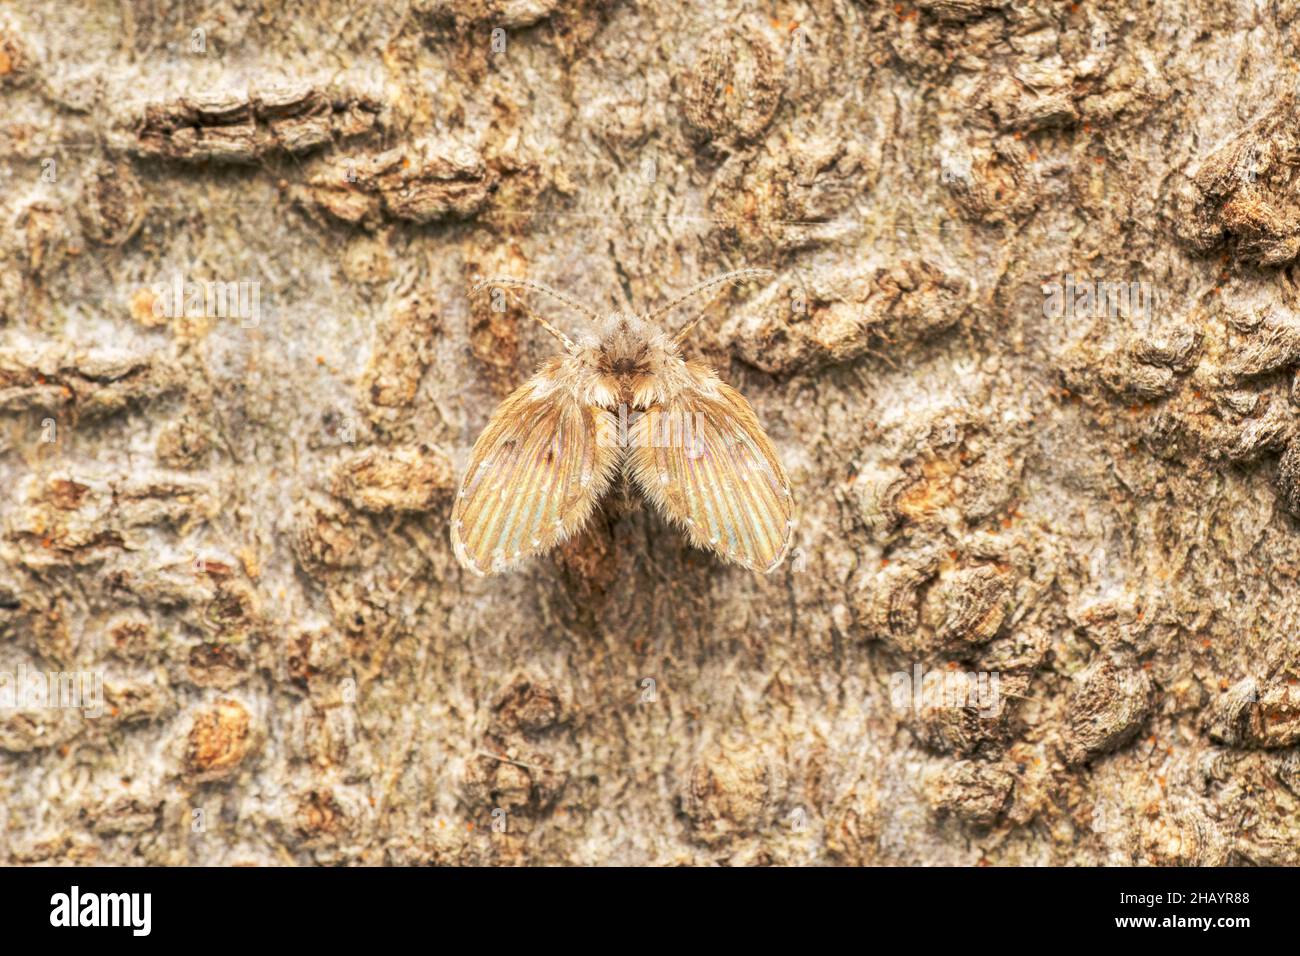 Moth fly, Psychoda grisescens, Satara, Maharashtra, India Stock Photo